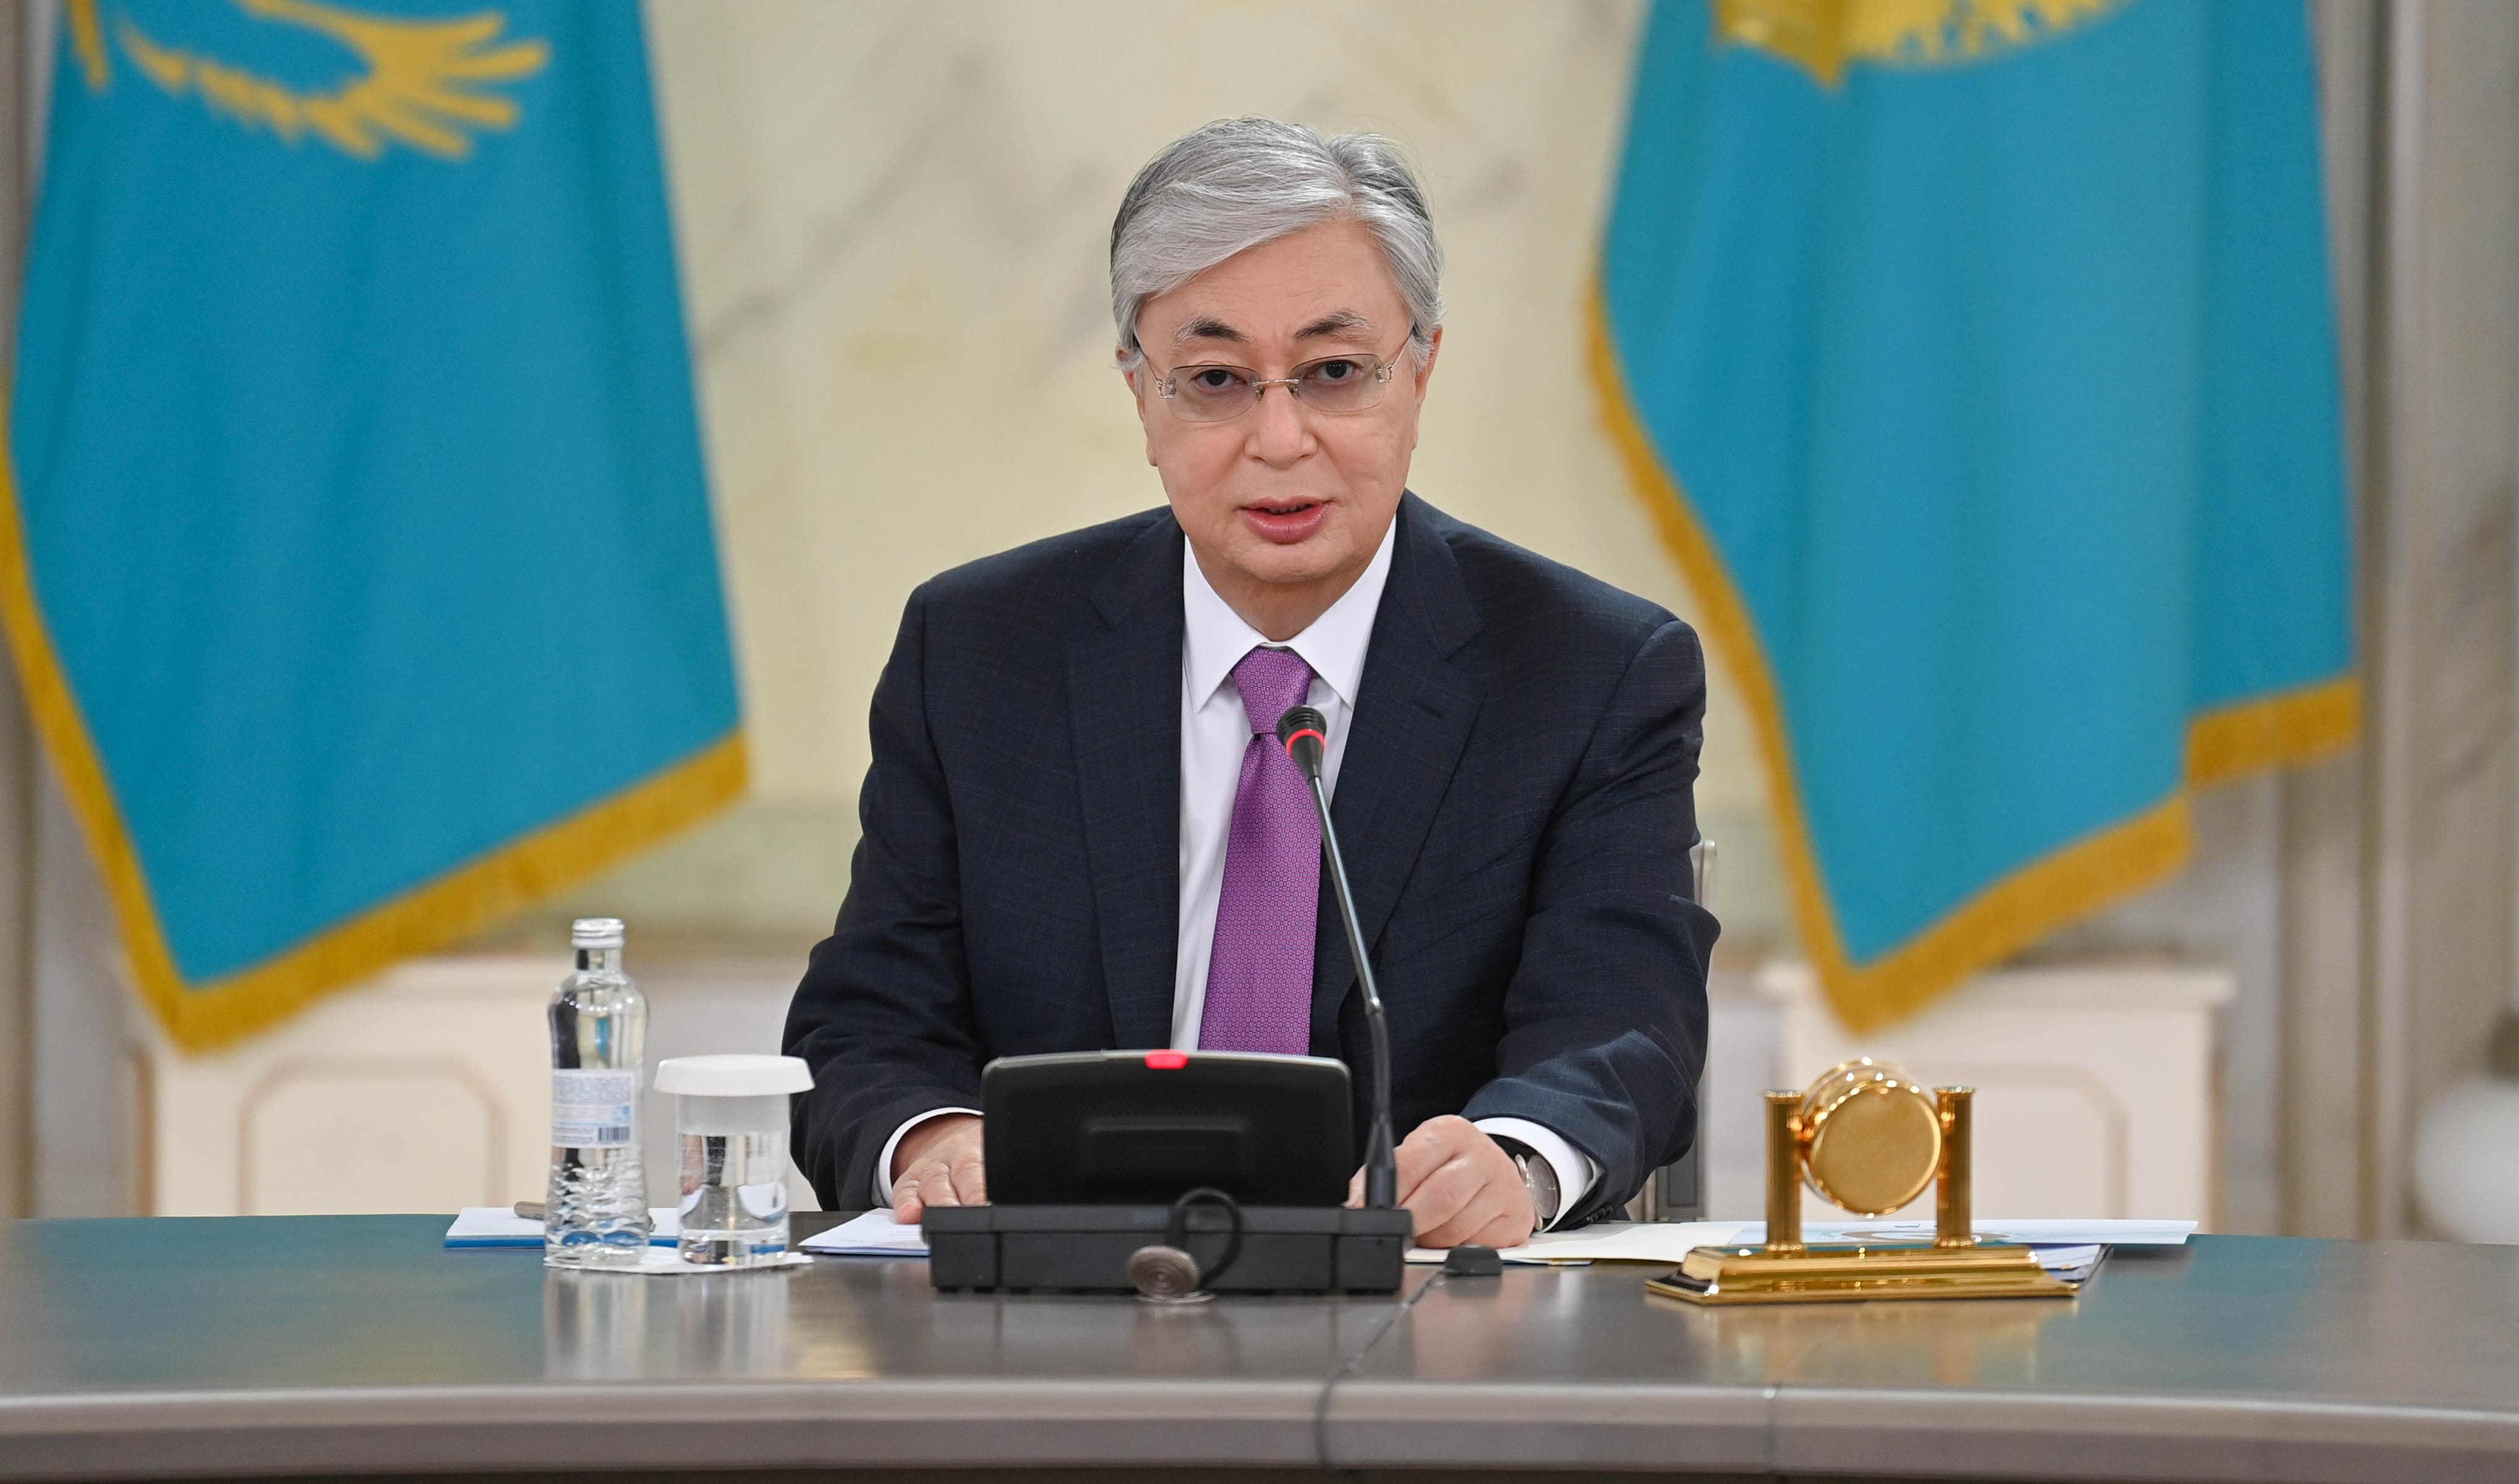 Tổng thống Kazakhstan Tokayev PlatoBlockchain Data Intelligence cho biết: “Chúng tôi là công ty khai thác tiền điện tử số hai trên thế giới và thực tế chúng tôi không nhận được lợi nhuận tài chính nào”. Tìm kiếm dọc. Ái.